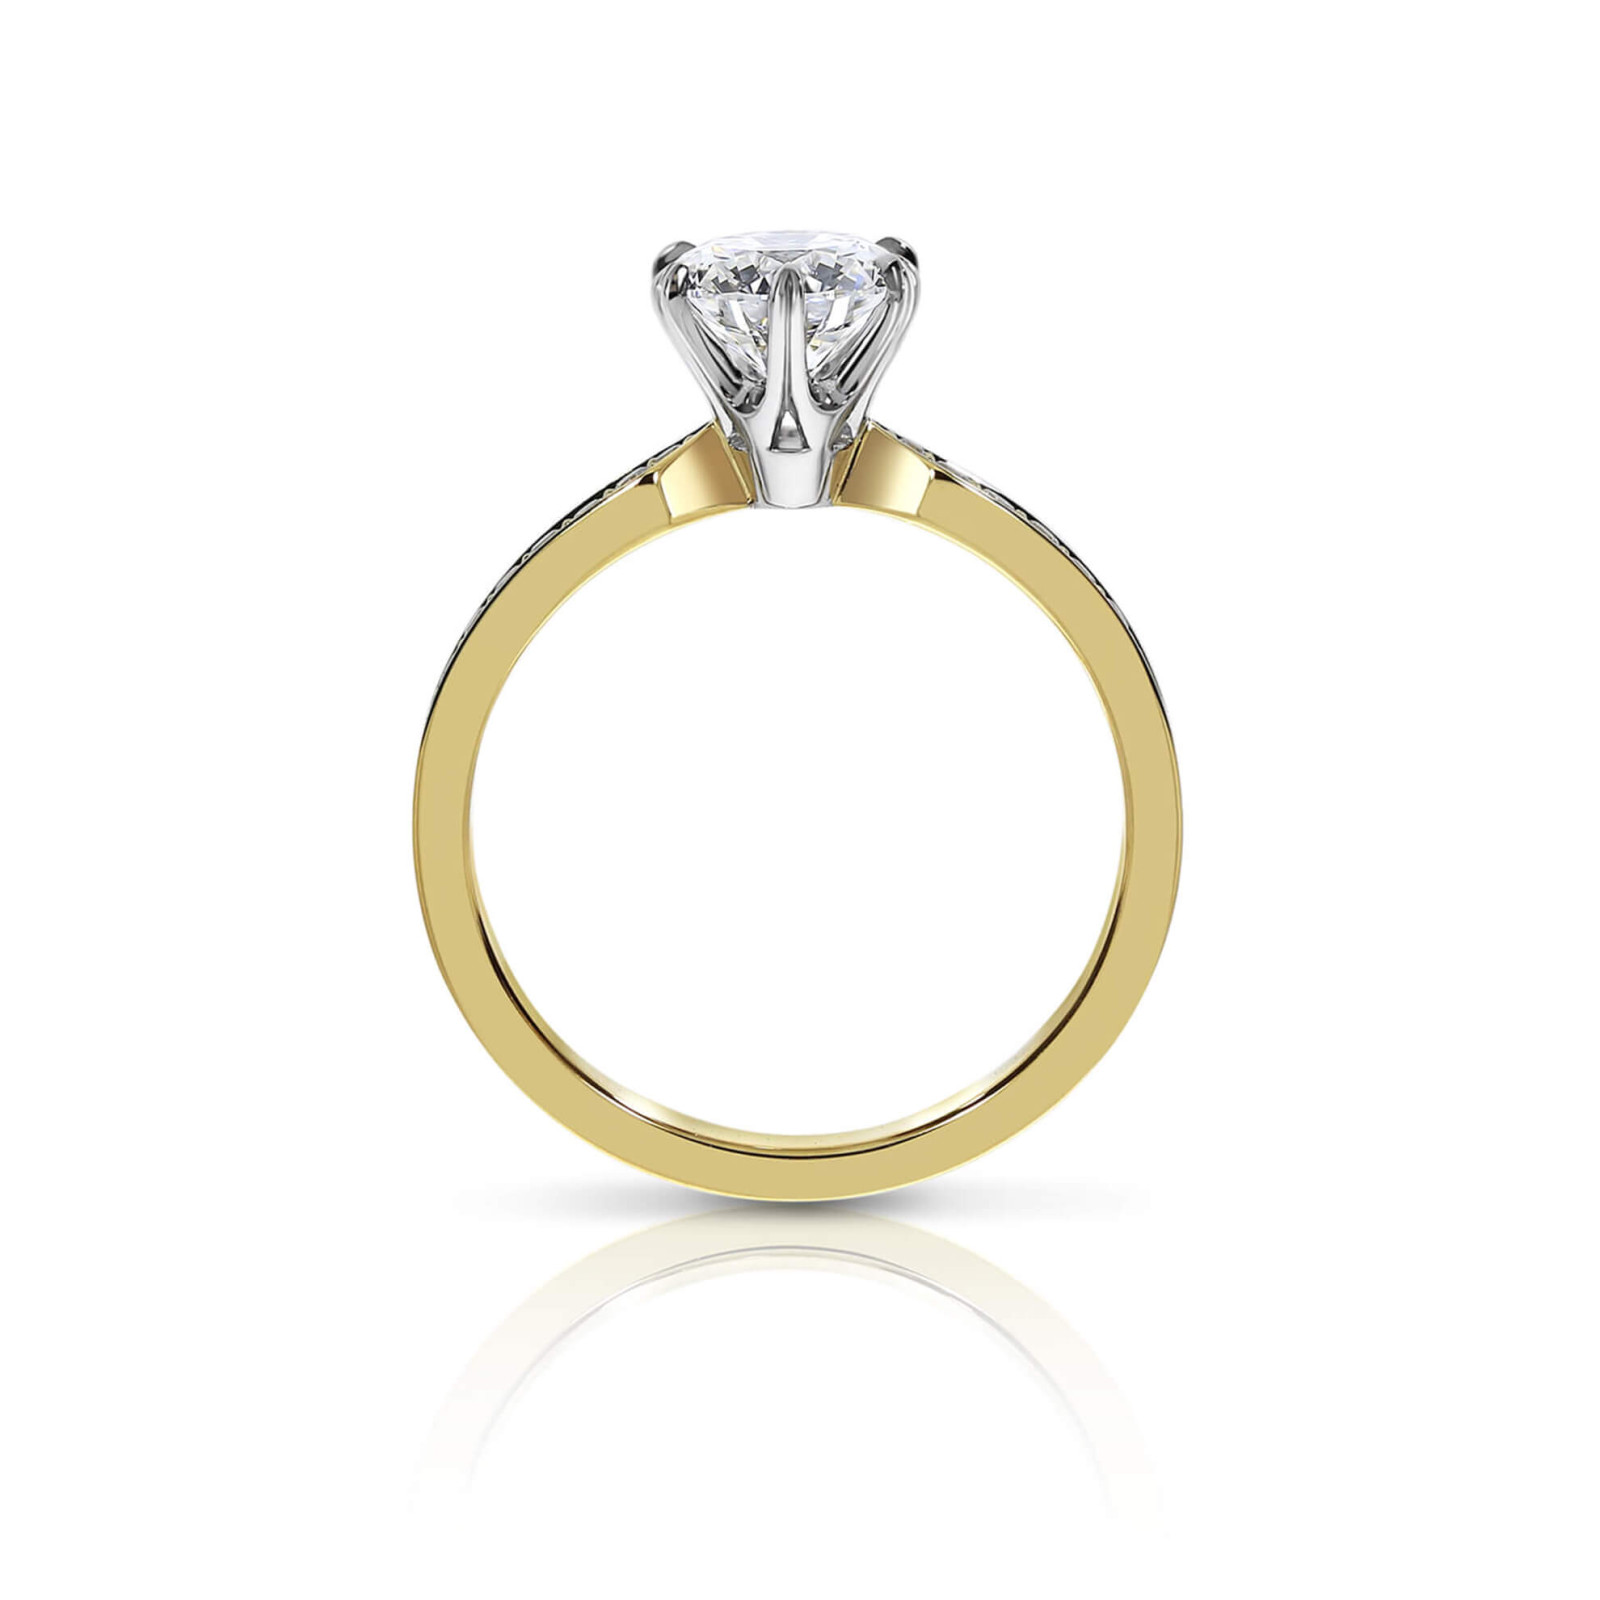 Round Diamond Engagement Ring with Pavé Set Diamond Band